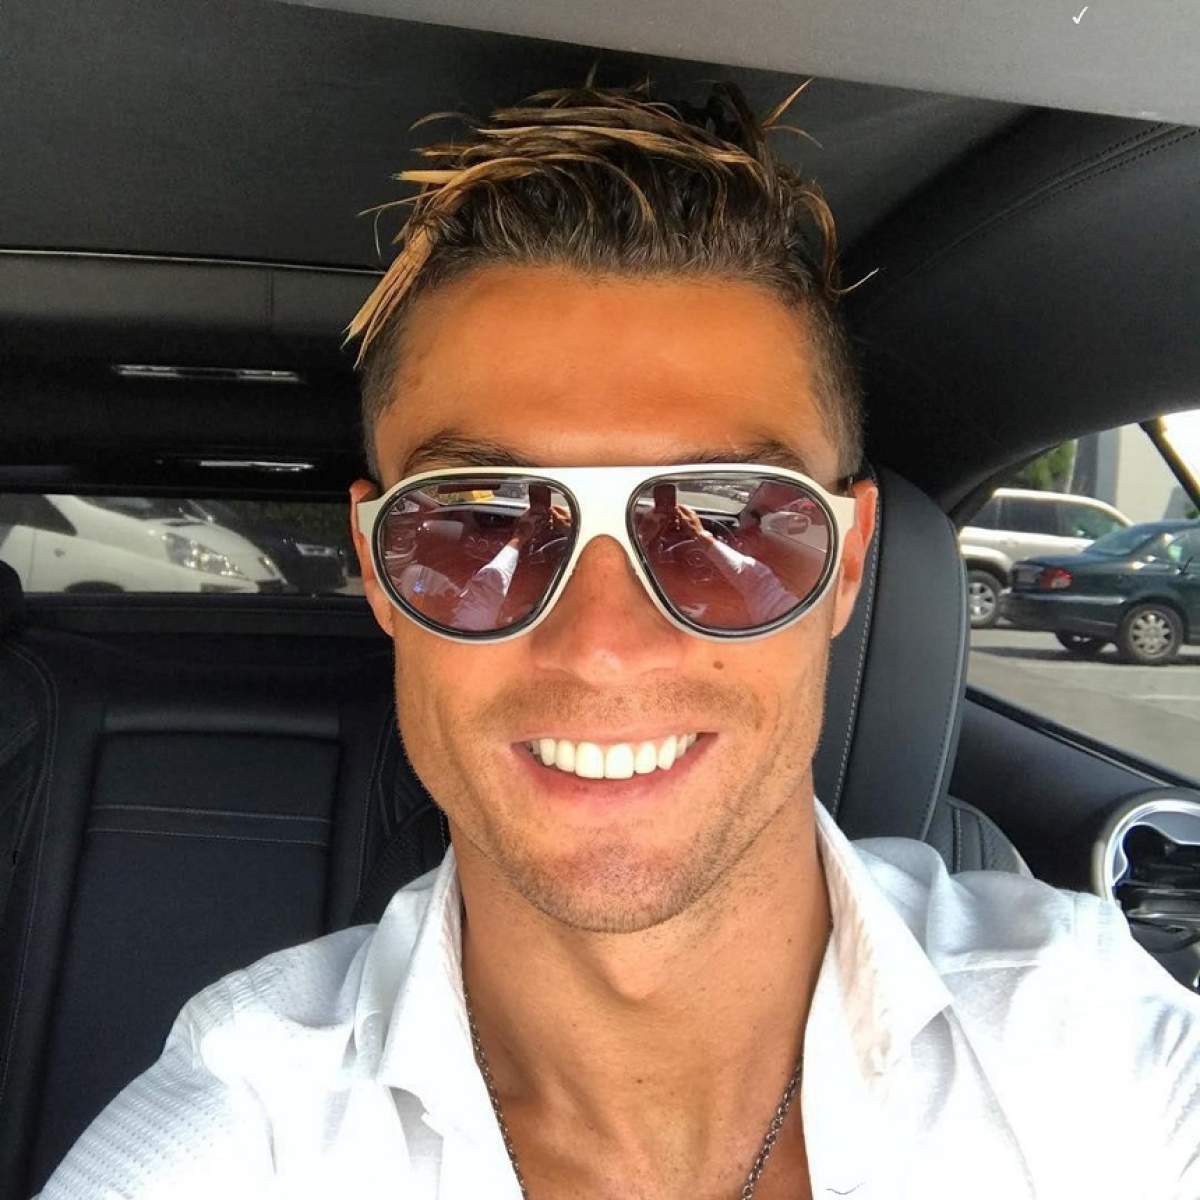 Preţul platit de Ronaldo pentru gemenii săi! Când îşi va strânge în braţe copiii